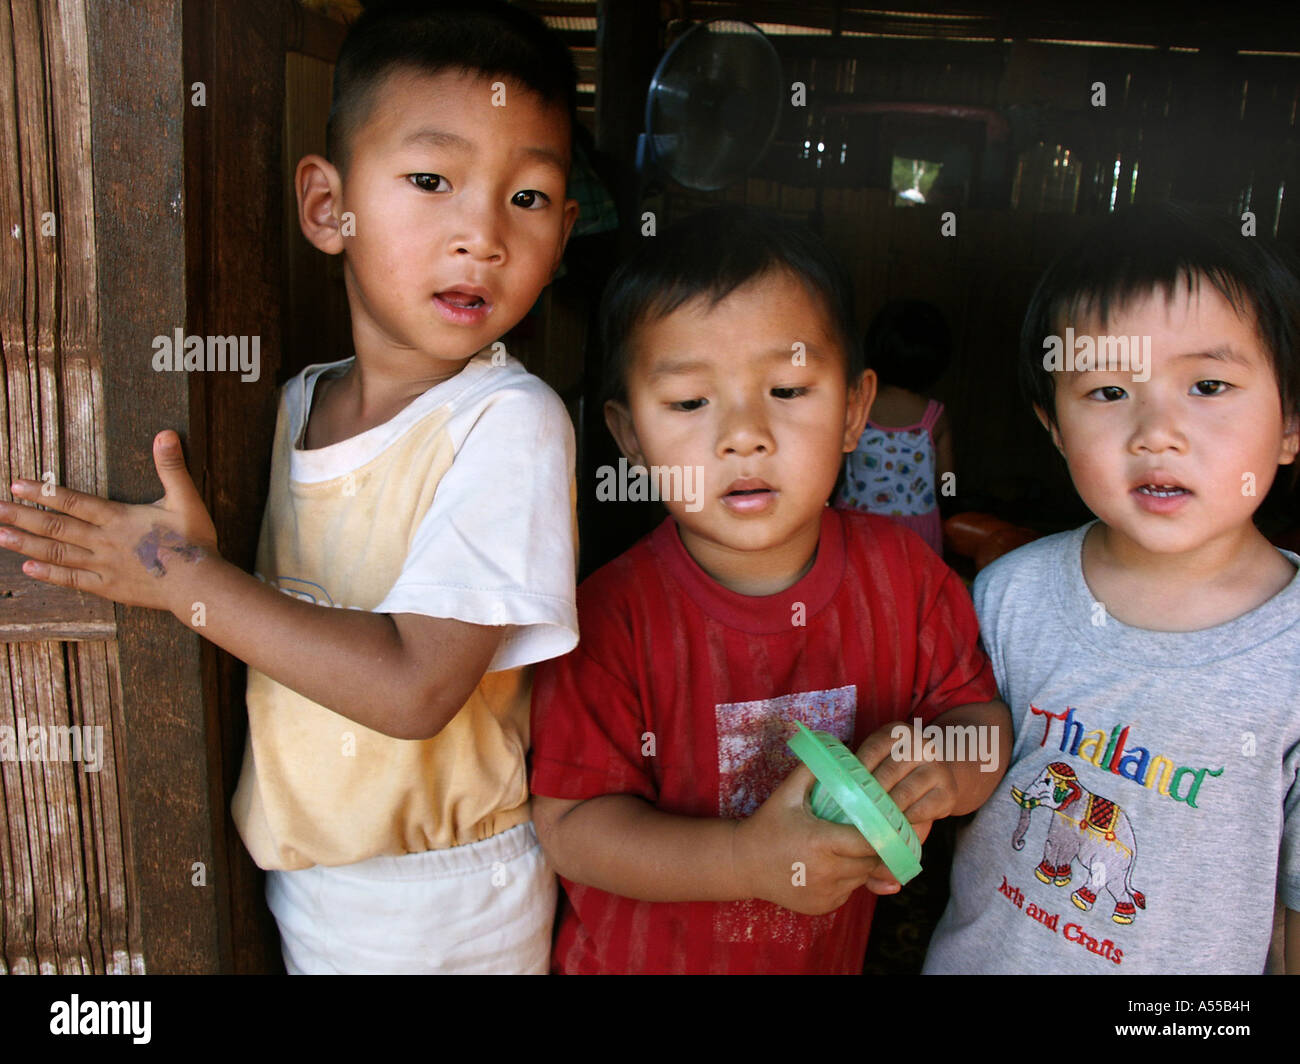 Ip Painet2805 9605 bambini ragazzi thailandia divieto kachin mai samaki paese nazione in via di sviluppo meno sviluppati dal punto di vista economico Foto Stock